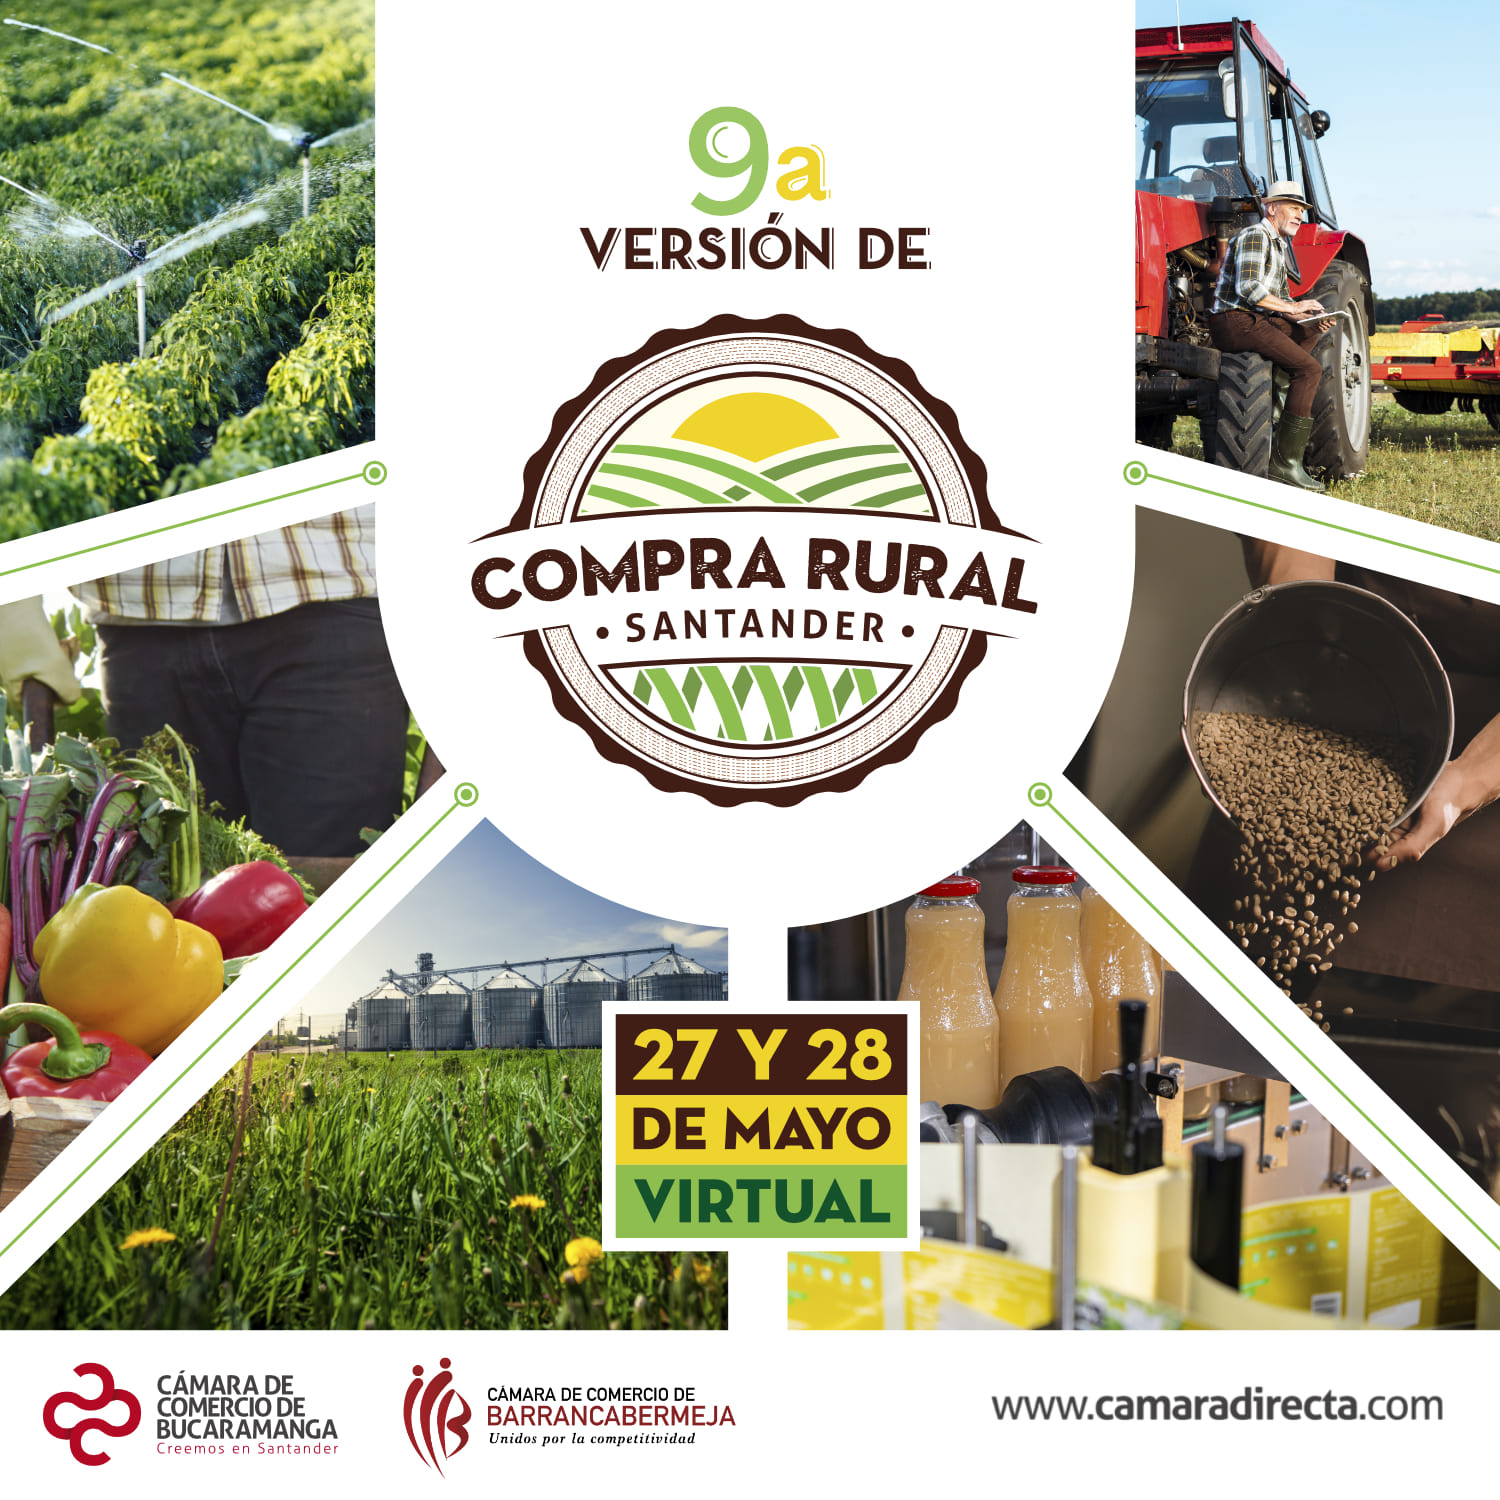 Compra Rural Santander llega a su novena versión para continuar reactivando y fortaleciendo la agroindustria de la región